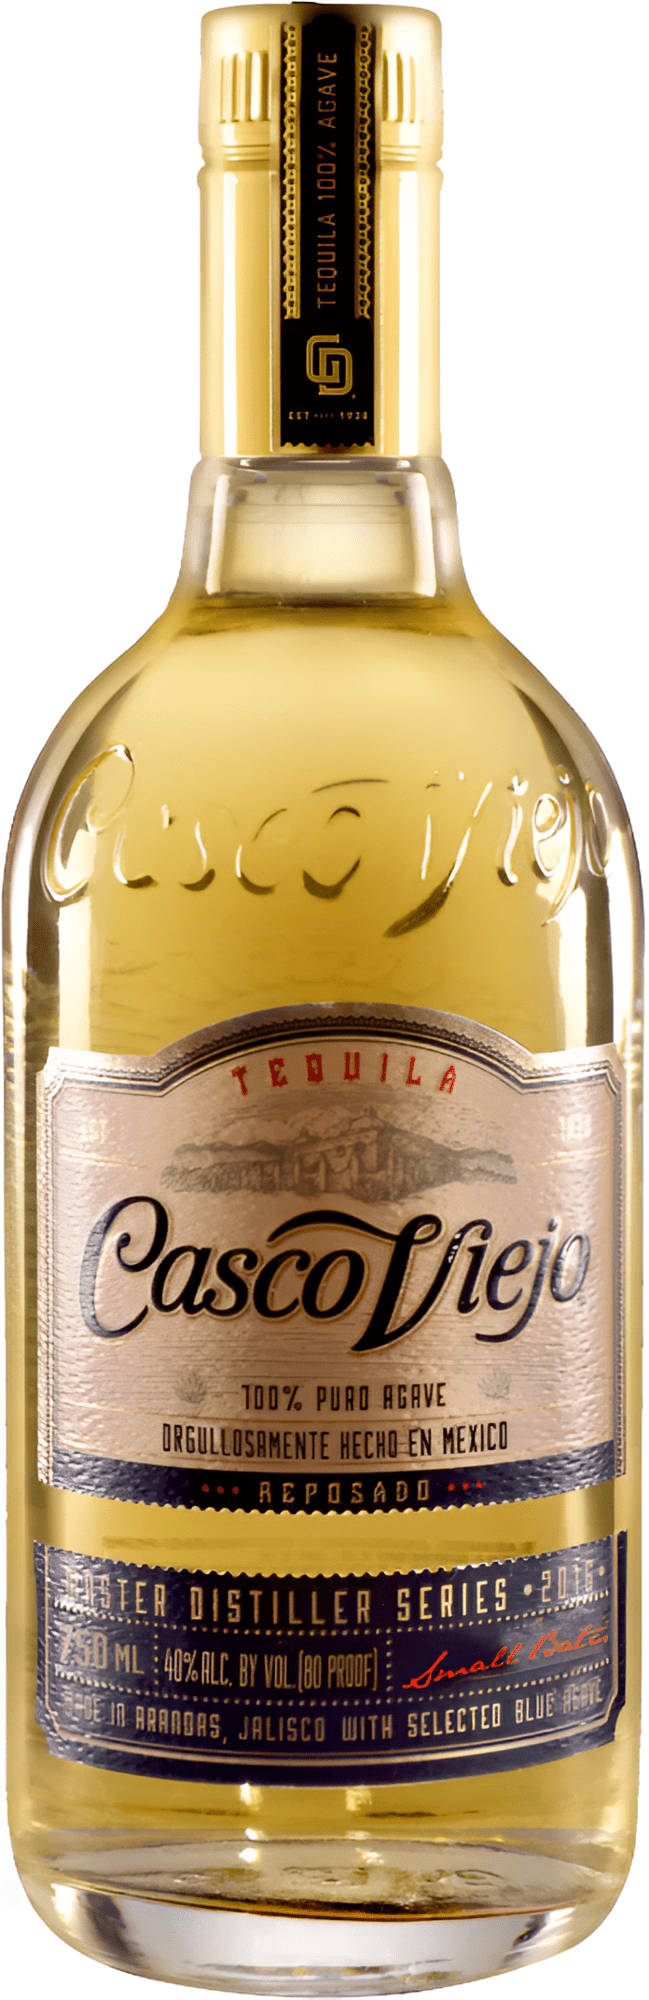 Casco Viejo Reposado Tequila 38% 0,7l (čistá flaša)